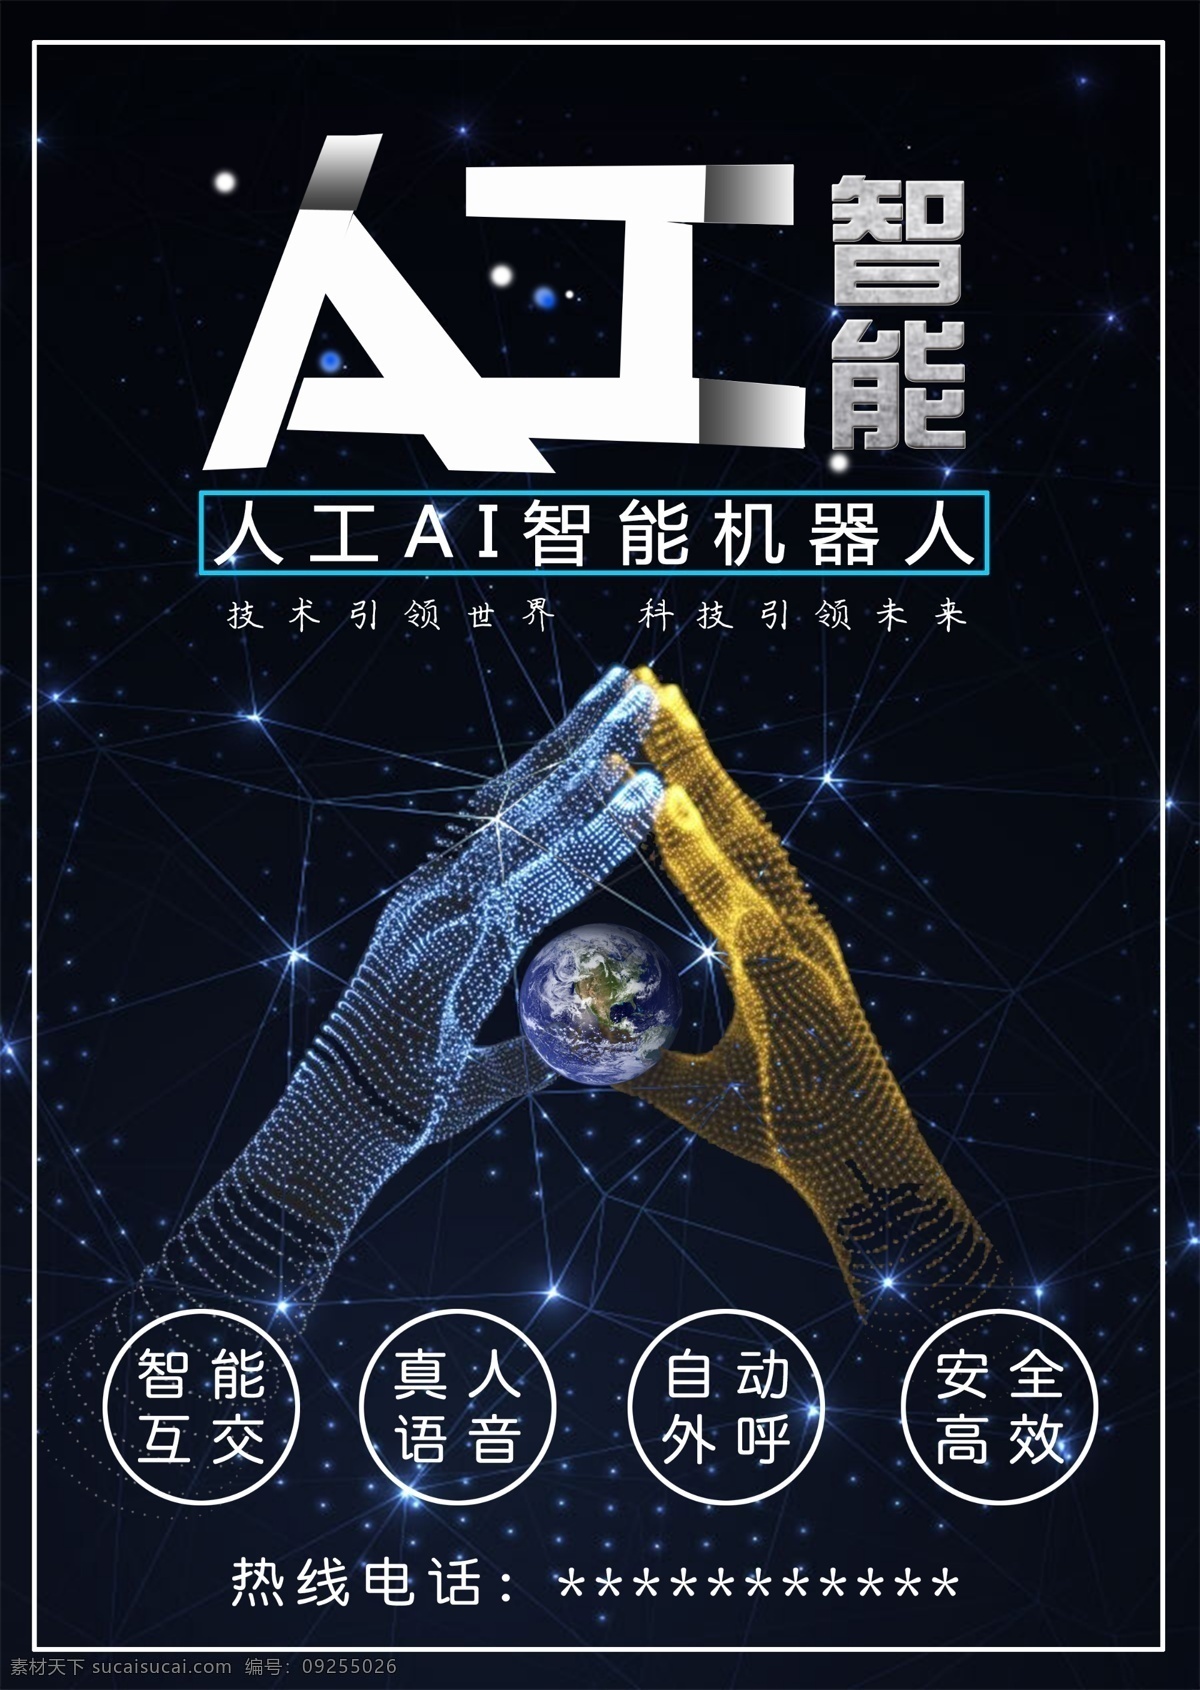 人工智能 机器人 海报 智能 广告 科幻 科技 语音机器人